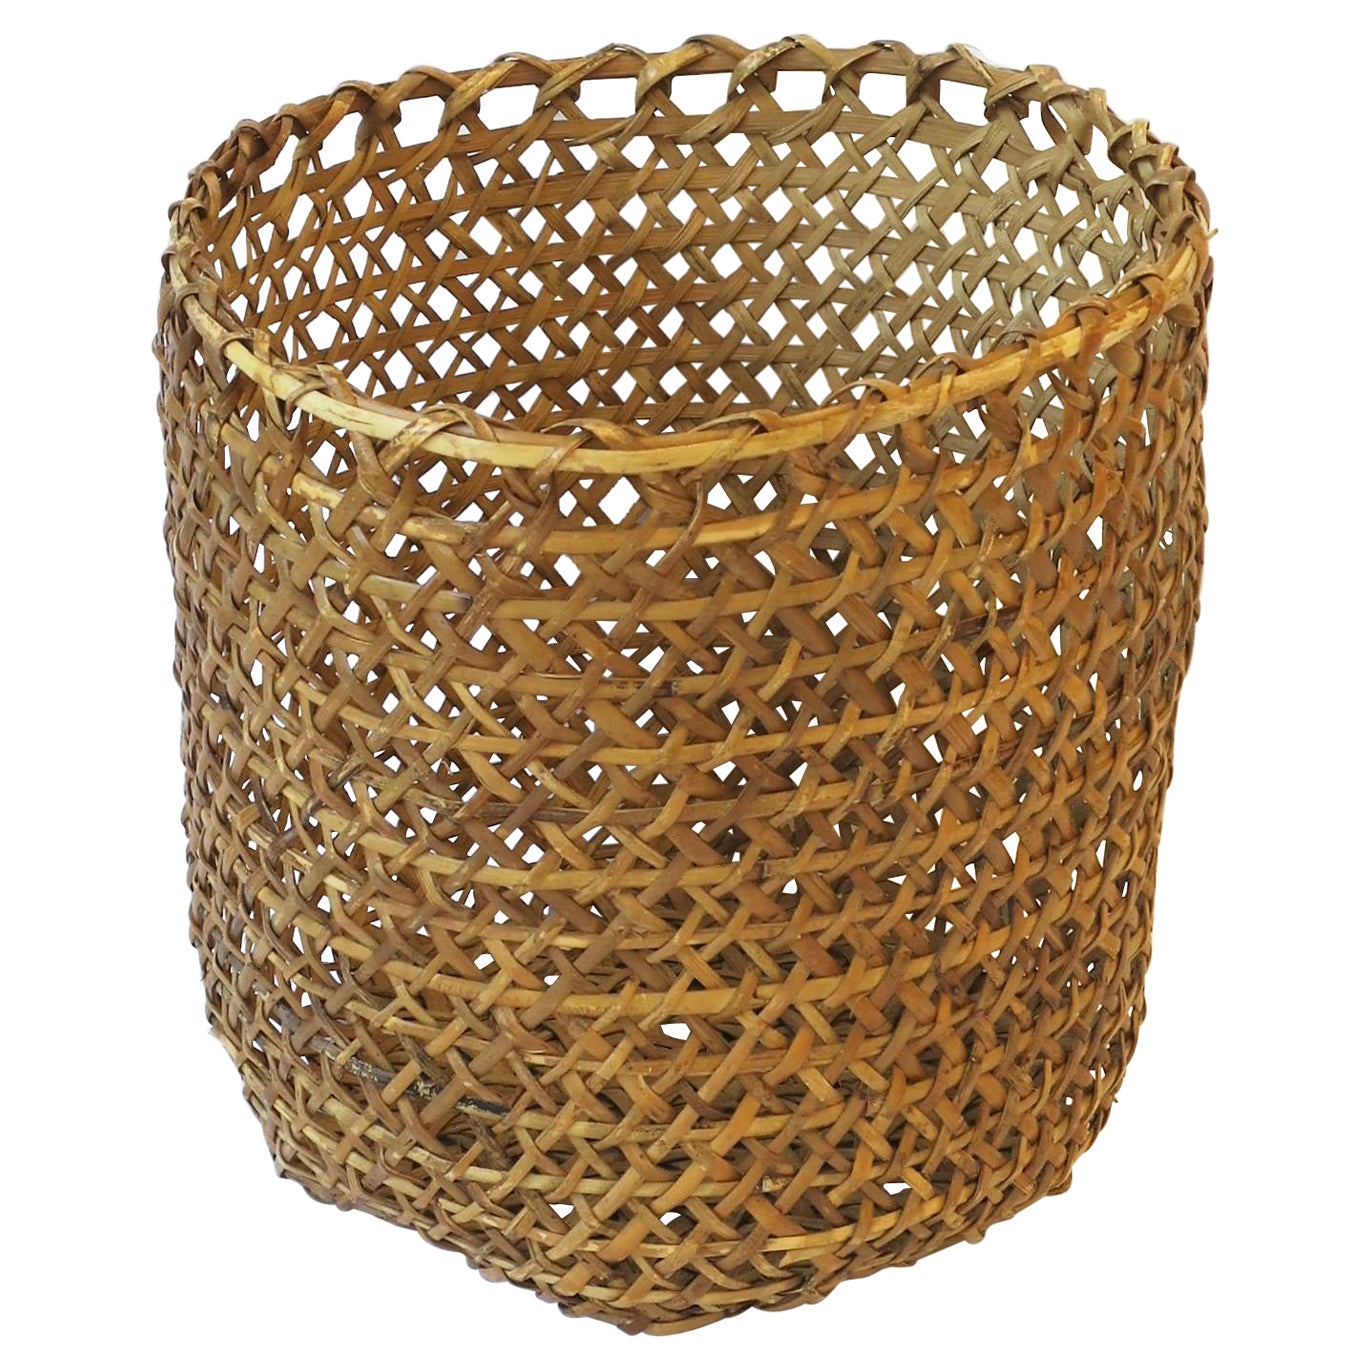 Vintage Wicker Basket Cachepot or Wastebasket Trash Can